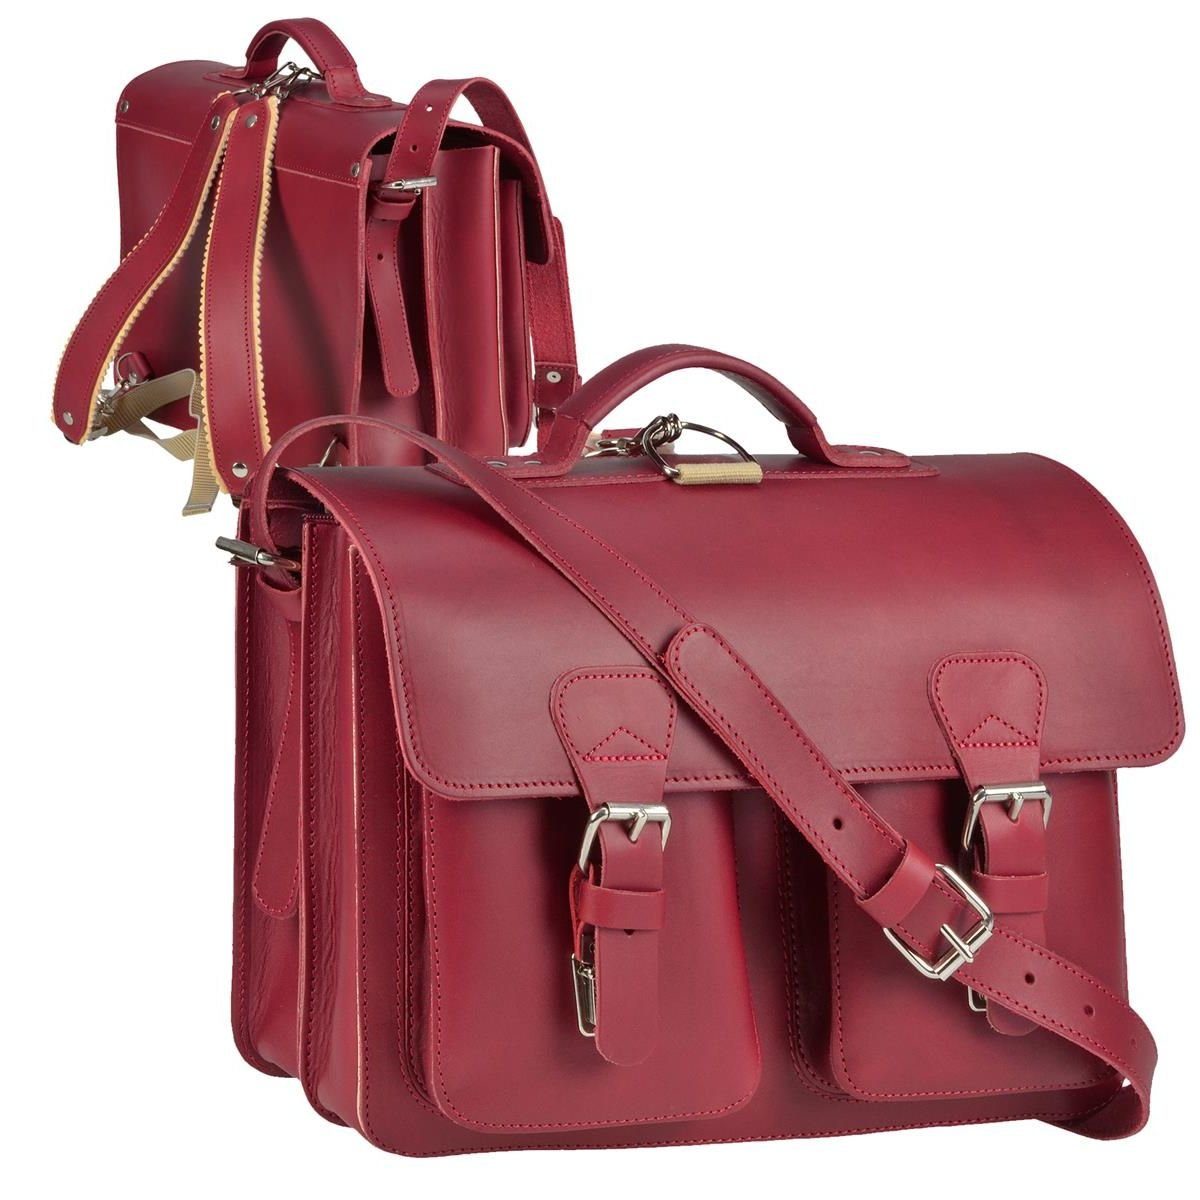 Ruitertassen Aktentasche Classic Satchel, 38 cm Lehrertasche mit 2 Fächern, auch als Rucksack zu tragen, Leder rot